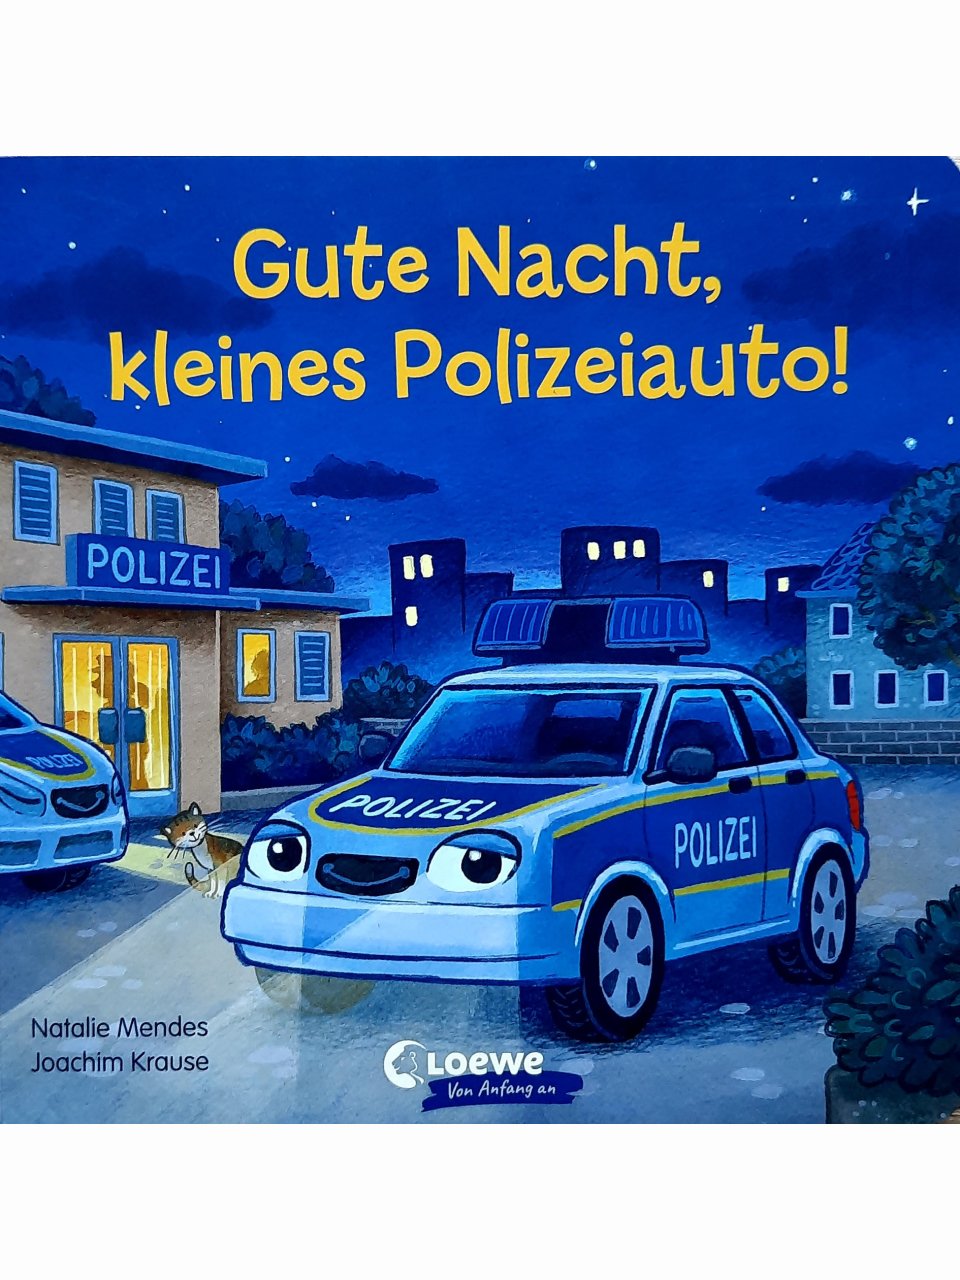 Gute Nacht, kleines Polizeiauto!